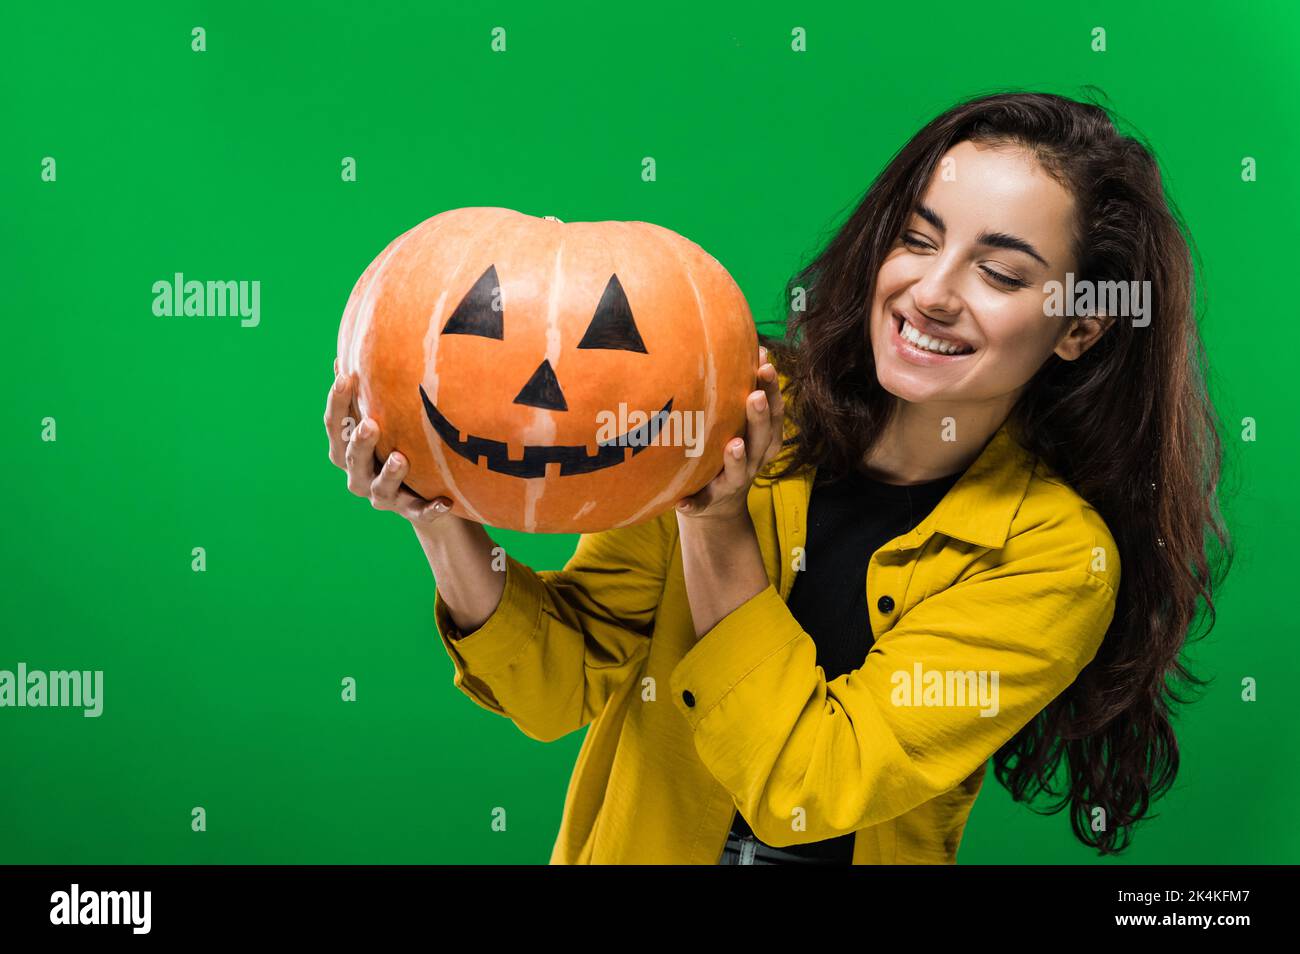 Foto von einer fröhlichen kaukasischen Frau in legerer Kleidung, mit gemaltem halloween-Kürbis, stehend auf isoliertem grünem Hintergrund, lächelnd. Halloween-Party, Albtraum-Konzept Stockfoto